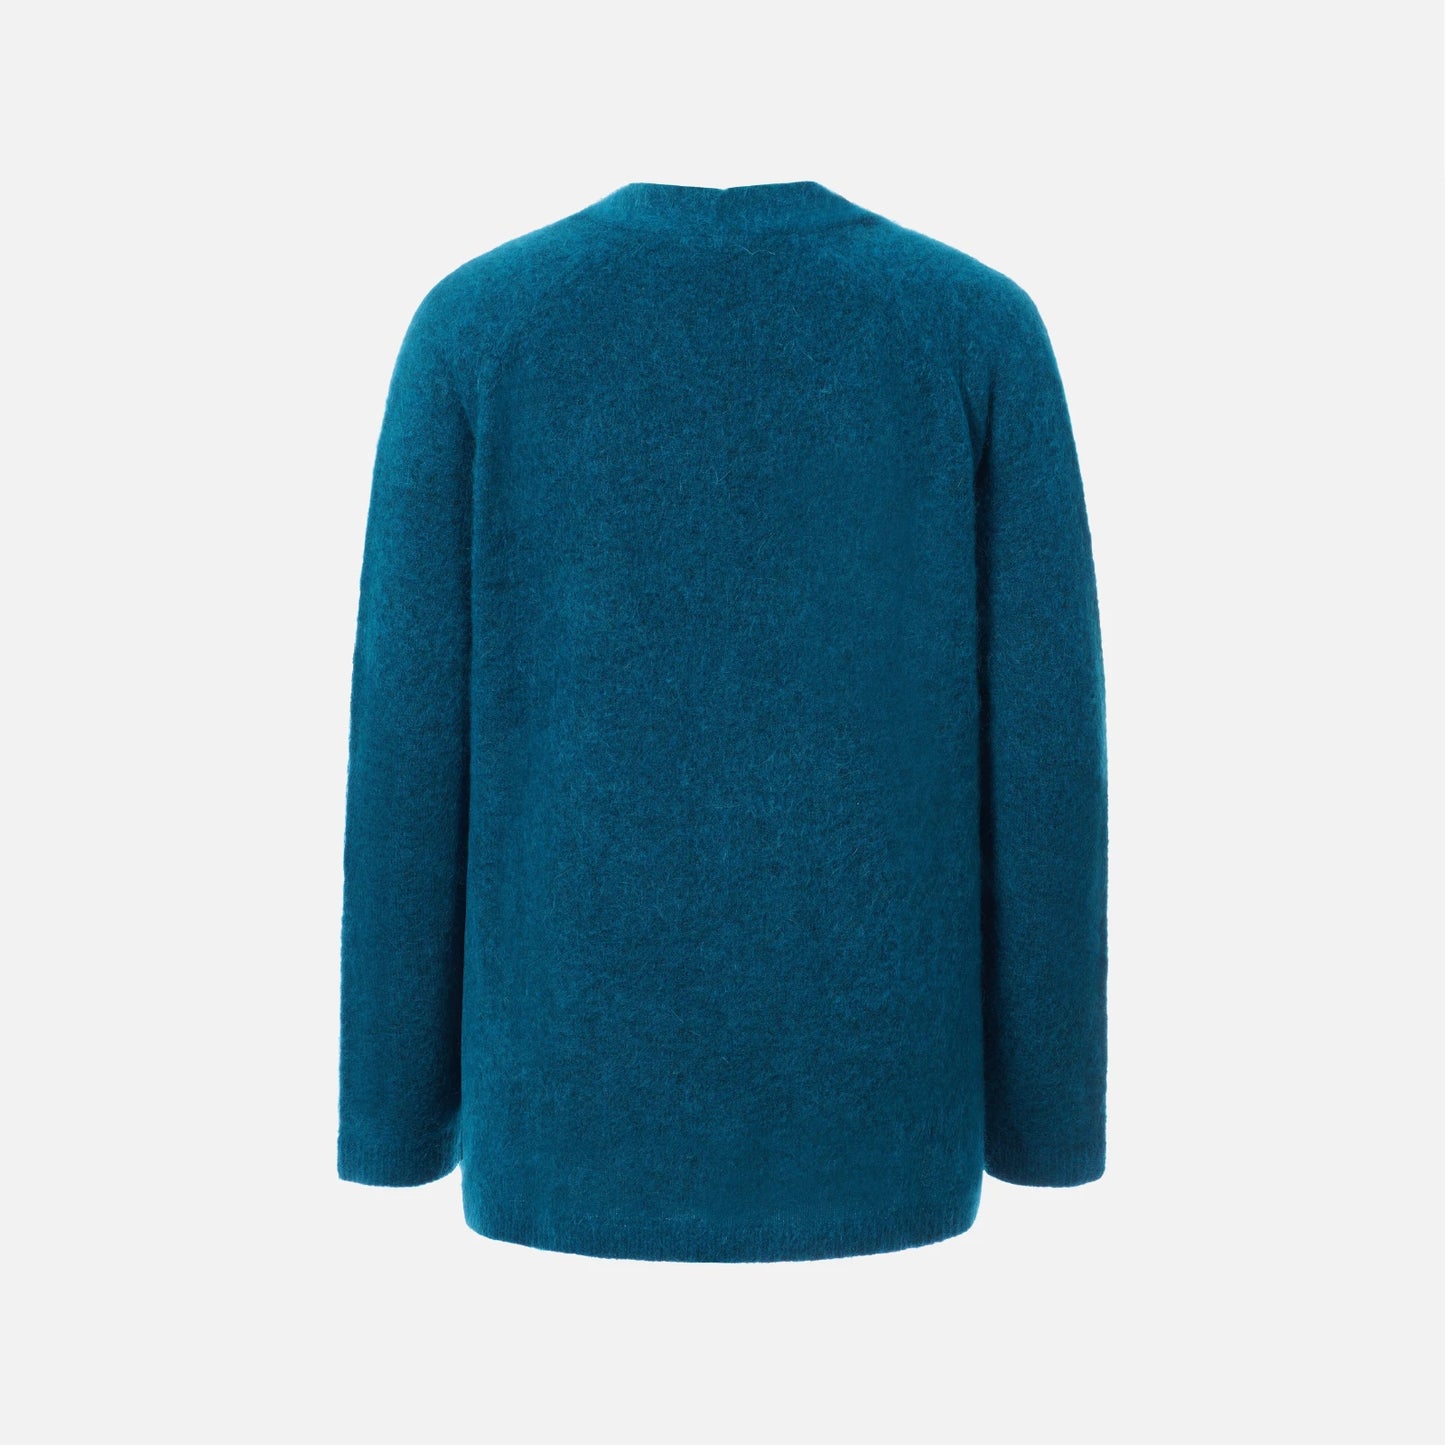 Sidner Sweater fra Ril's i Emerald (ryg)